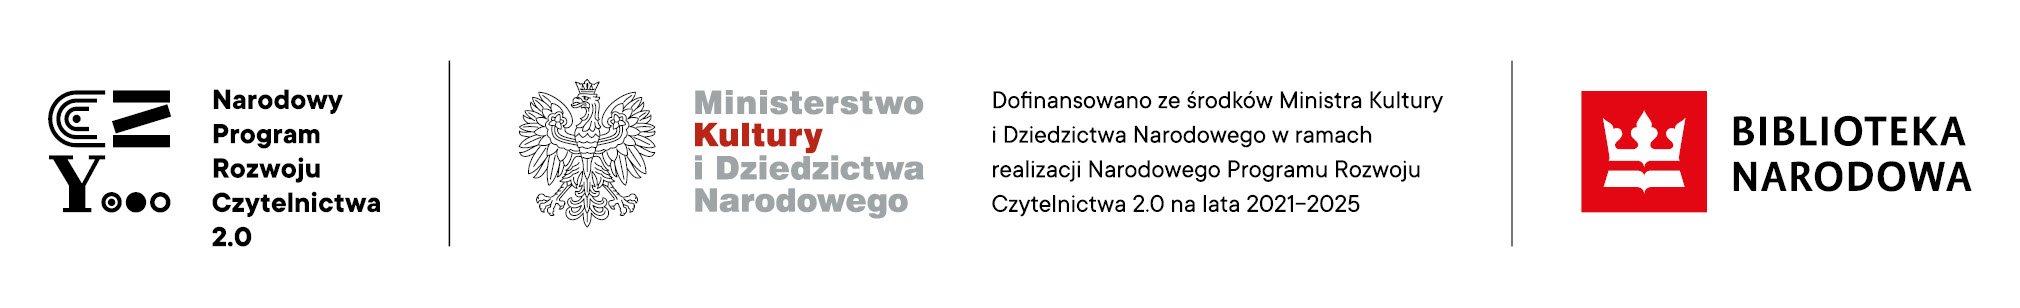 Logotypy związane z Narodowym Programem Rozwoju Czytelnictwa